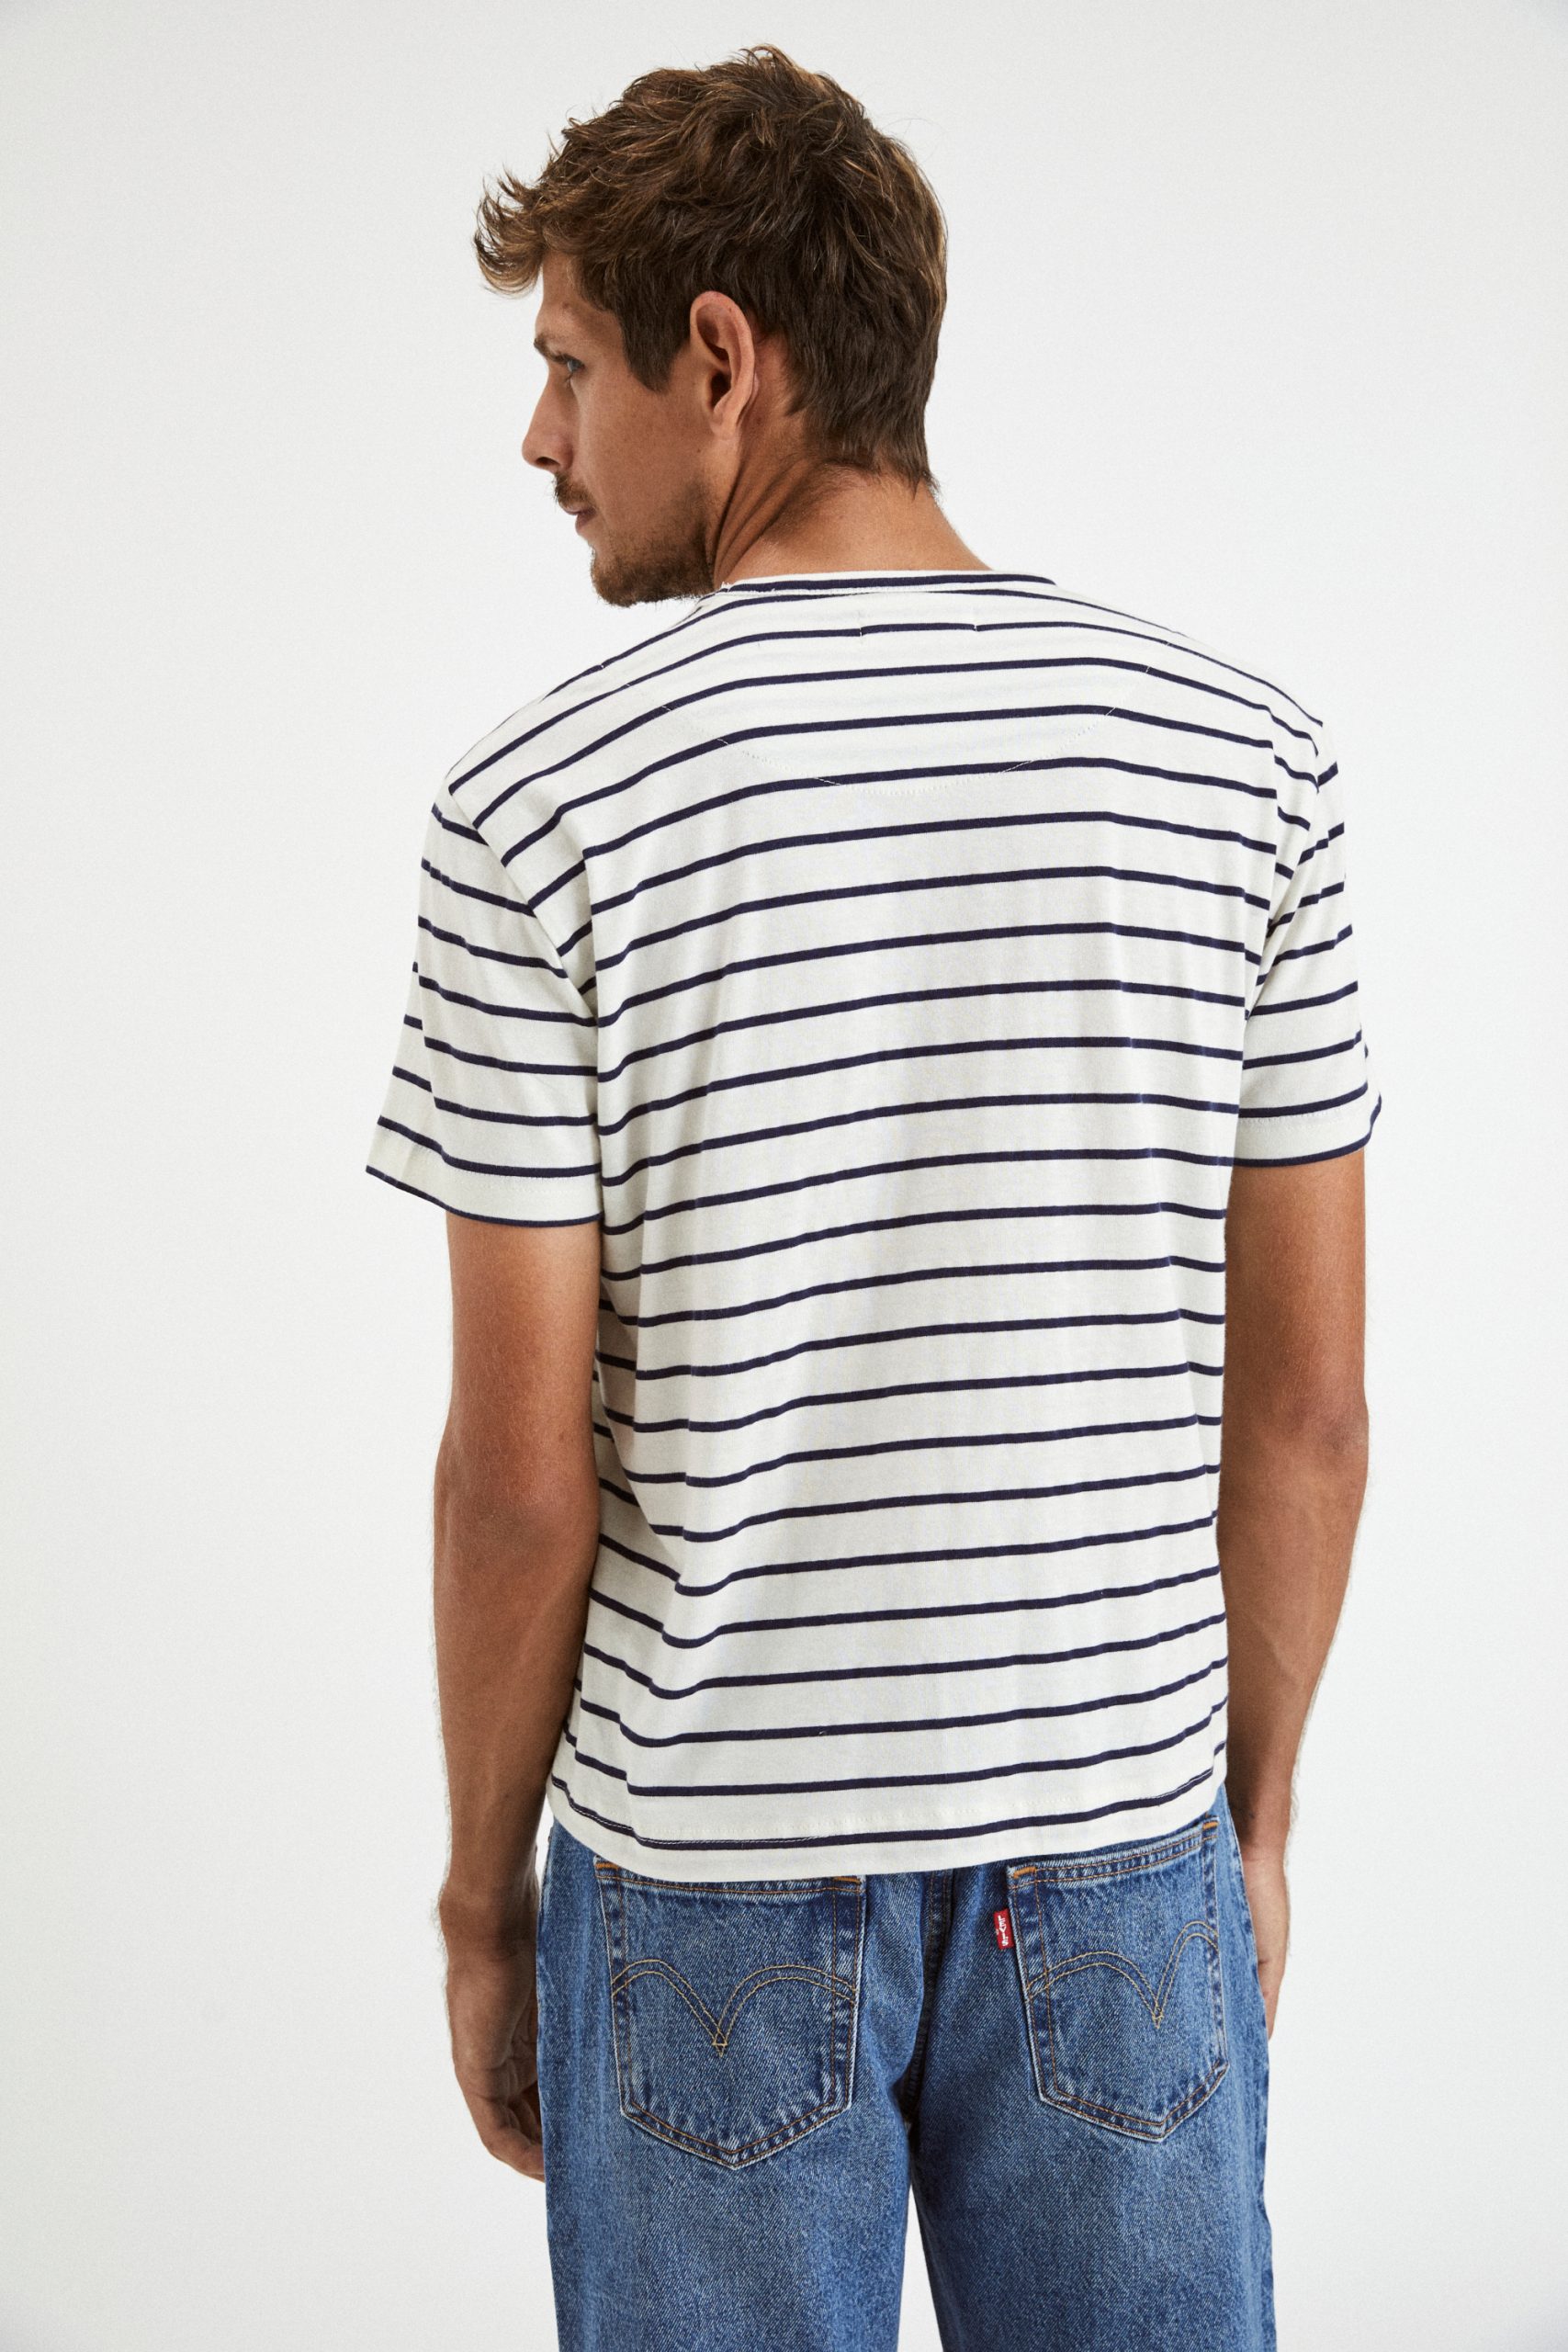 T-Shirt Stripes White Black 3